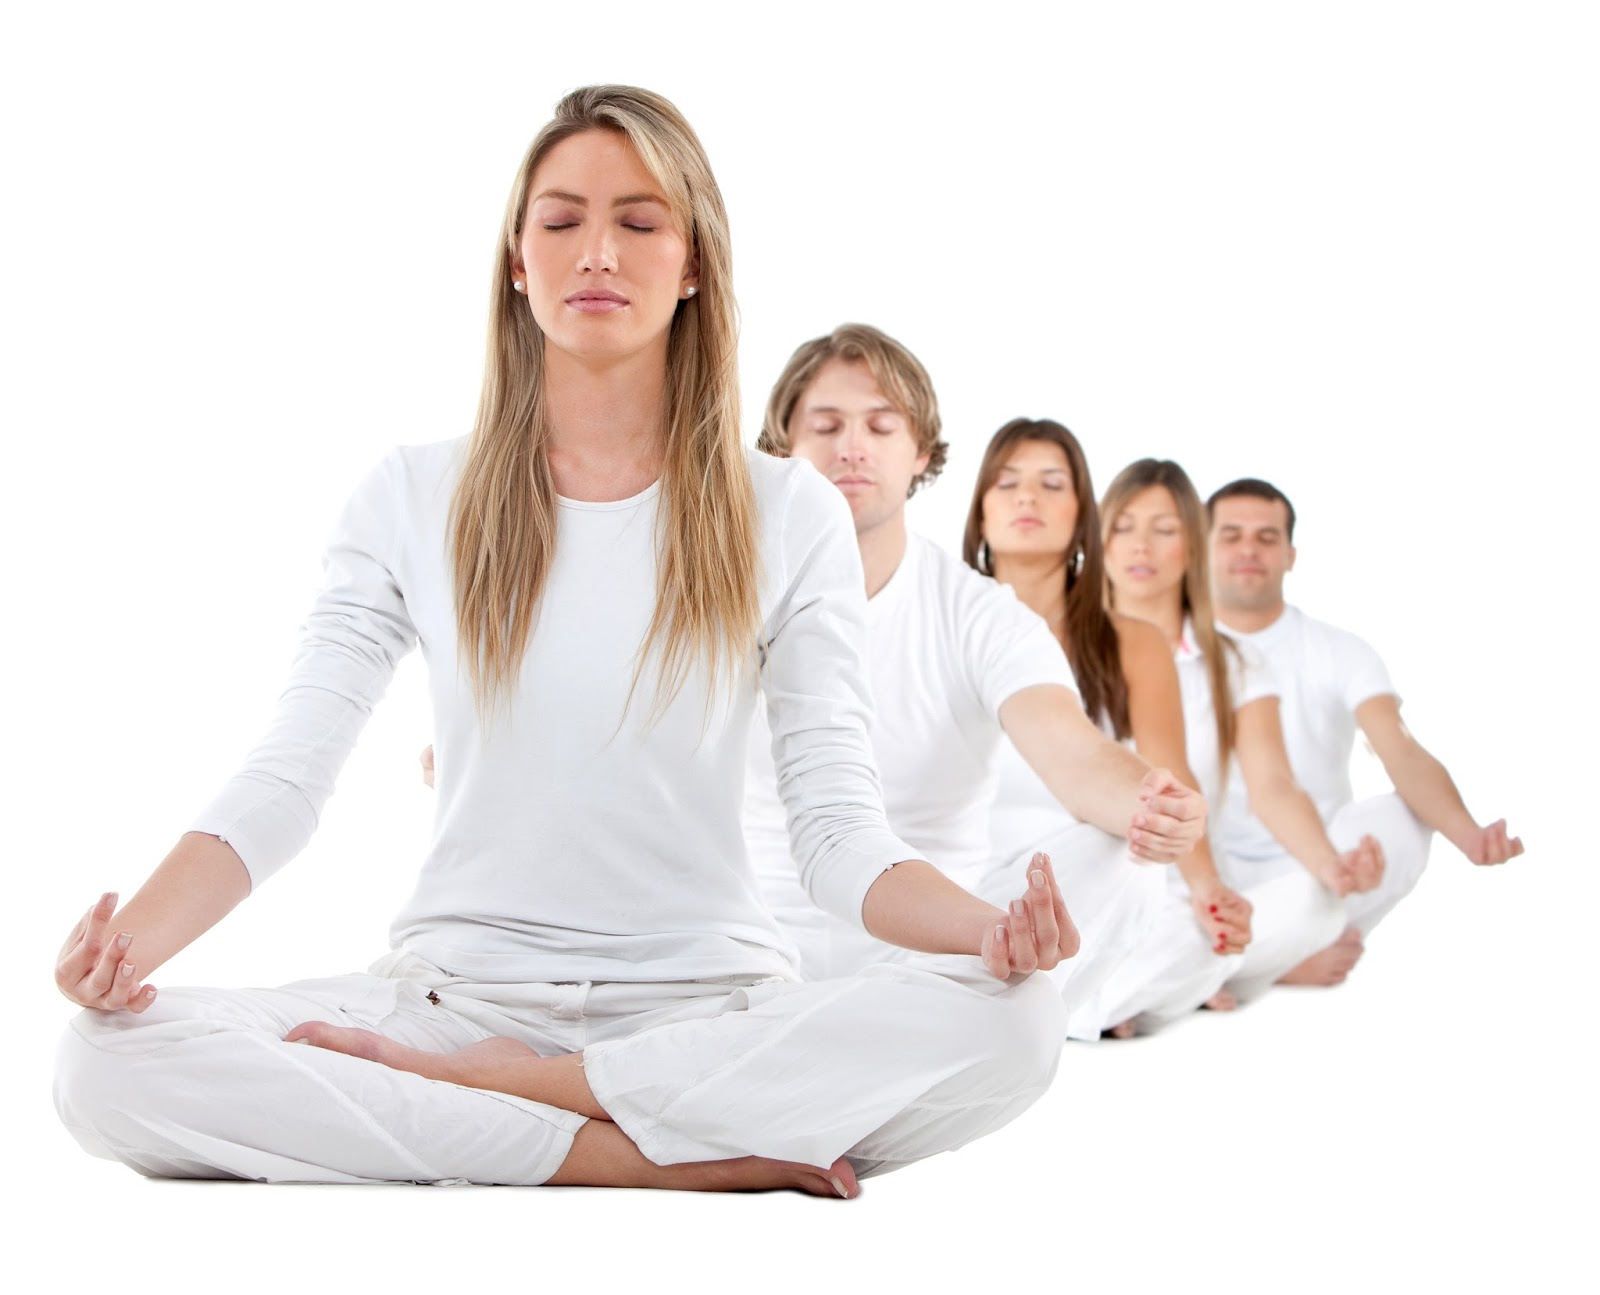 Релаксация обучение. Медитирует на белом фоне. Медитация на белом фоне. Группа людей медитируют. Йоги на белом фоне.